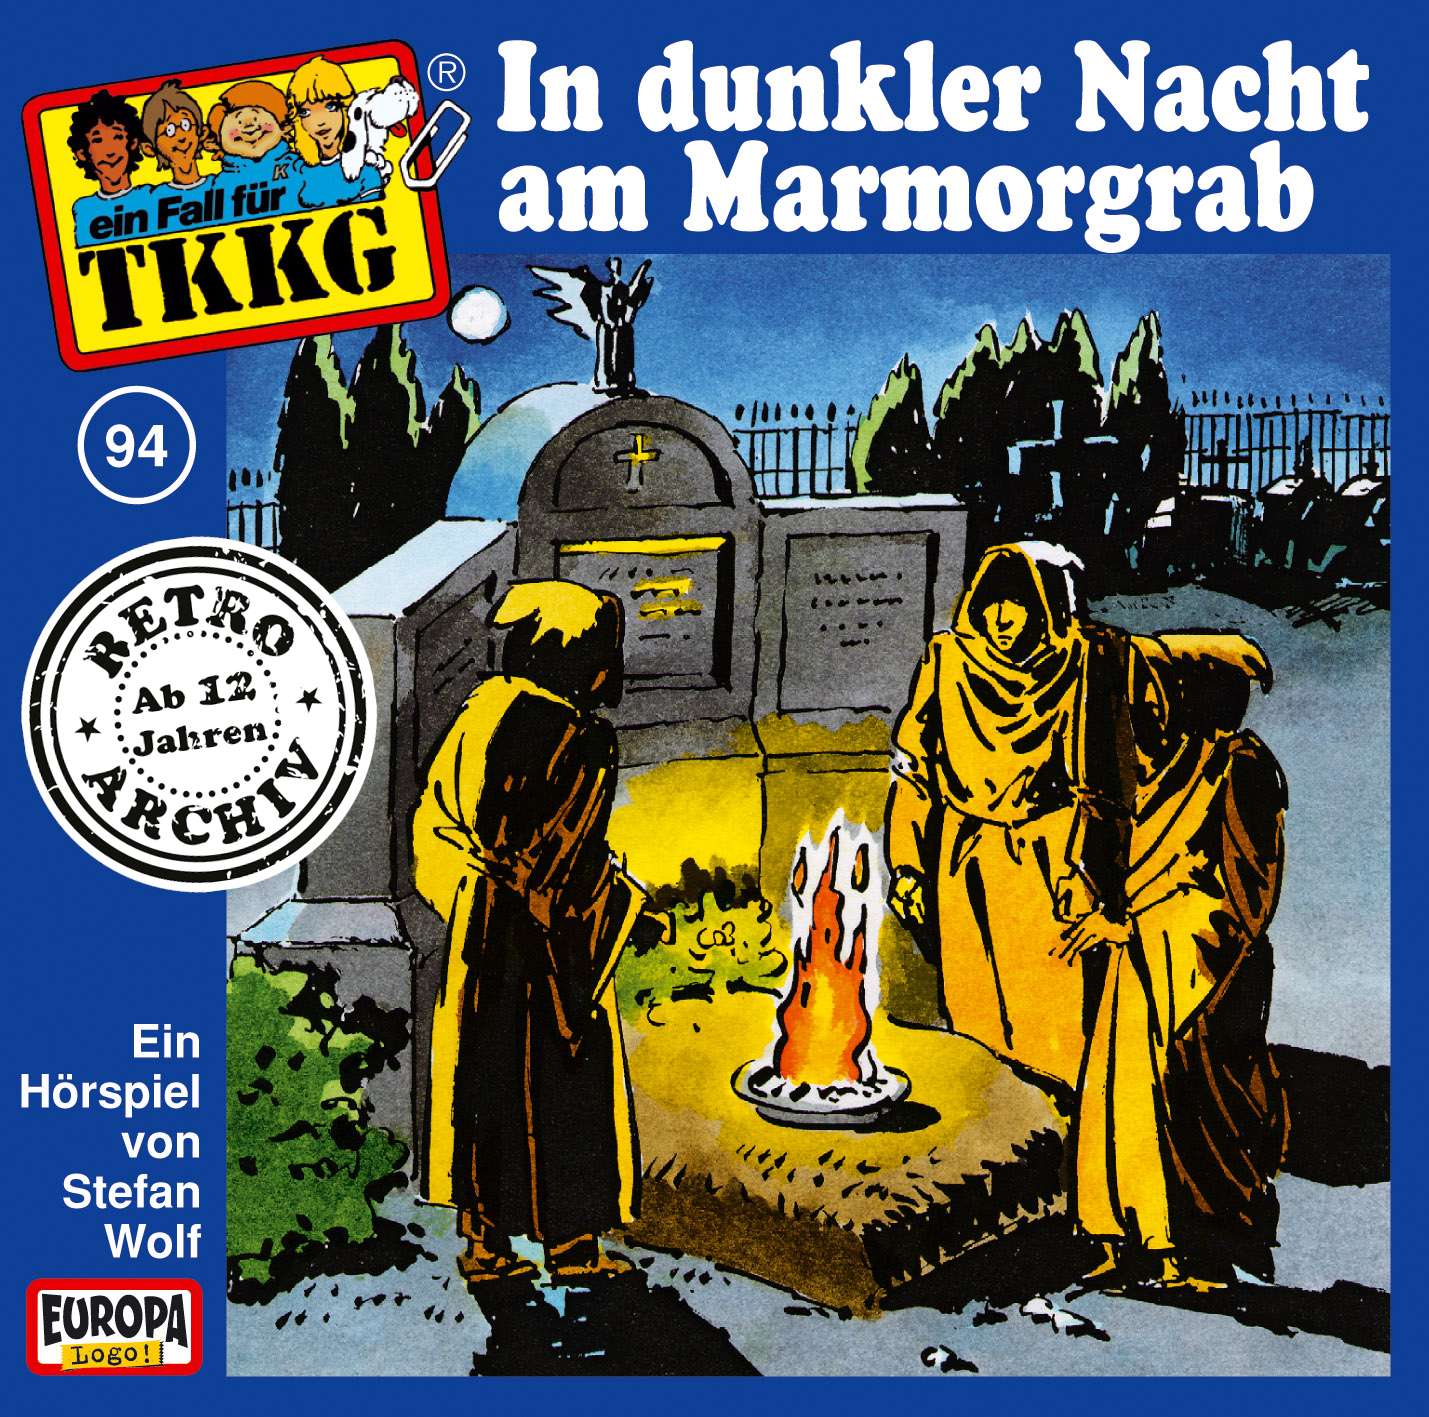 TKKG Retro-Archiv - In dunkler Nacht am Marmorgrab